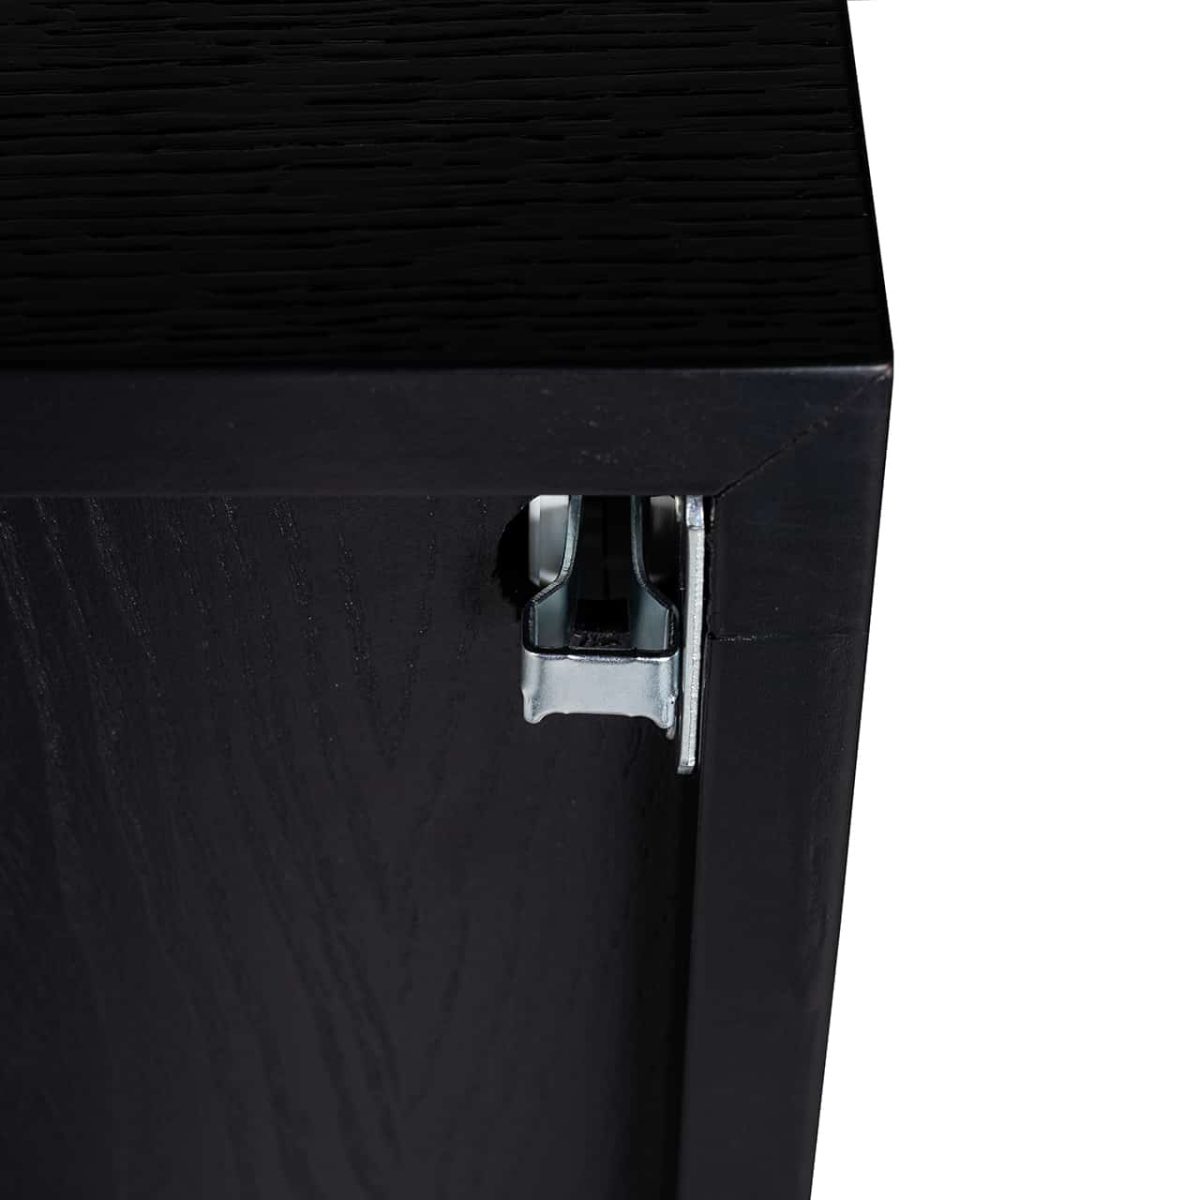 6532 - TV dressoir Tetrad (Black)